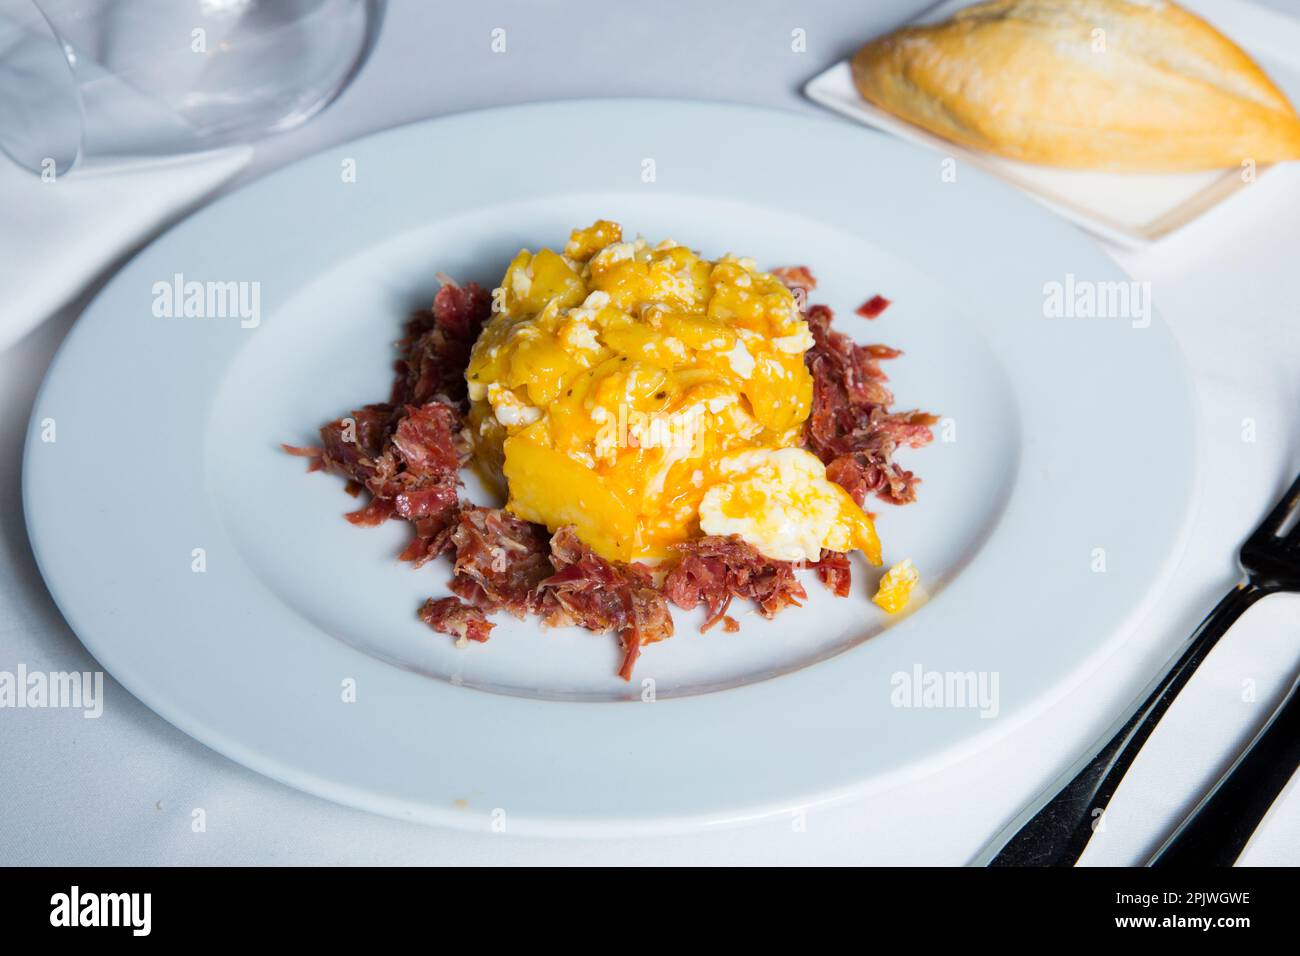 Uova fritte con patatine fritte e prosciutto di serrano. Tradizionale tapa spagnola soprannominata Huevos Rotos. Foto Stock